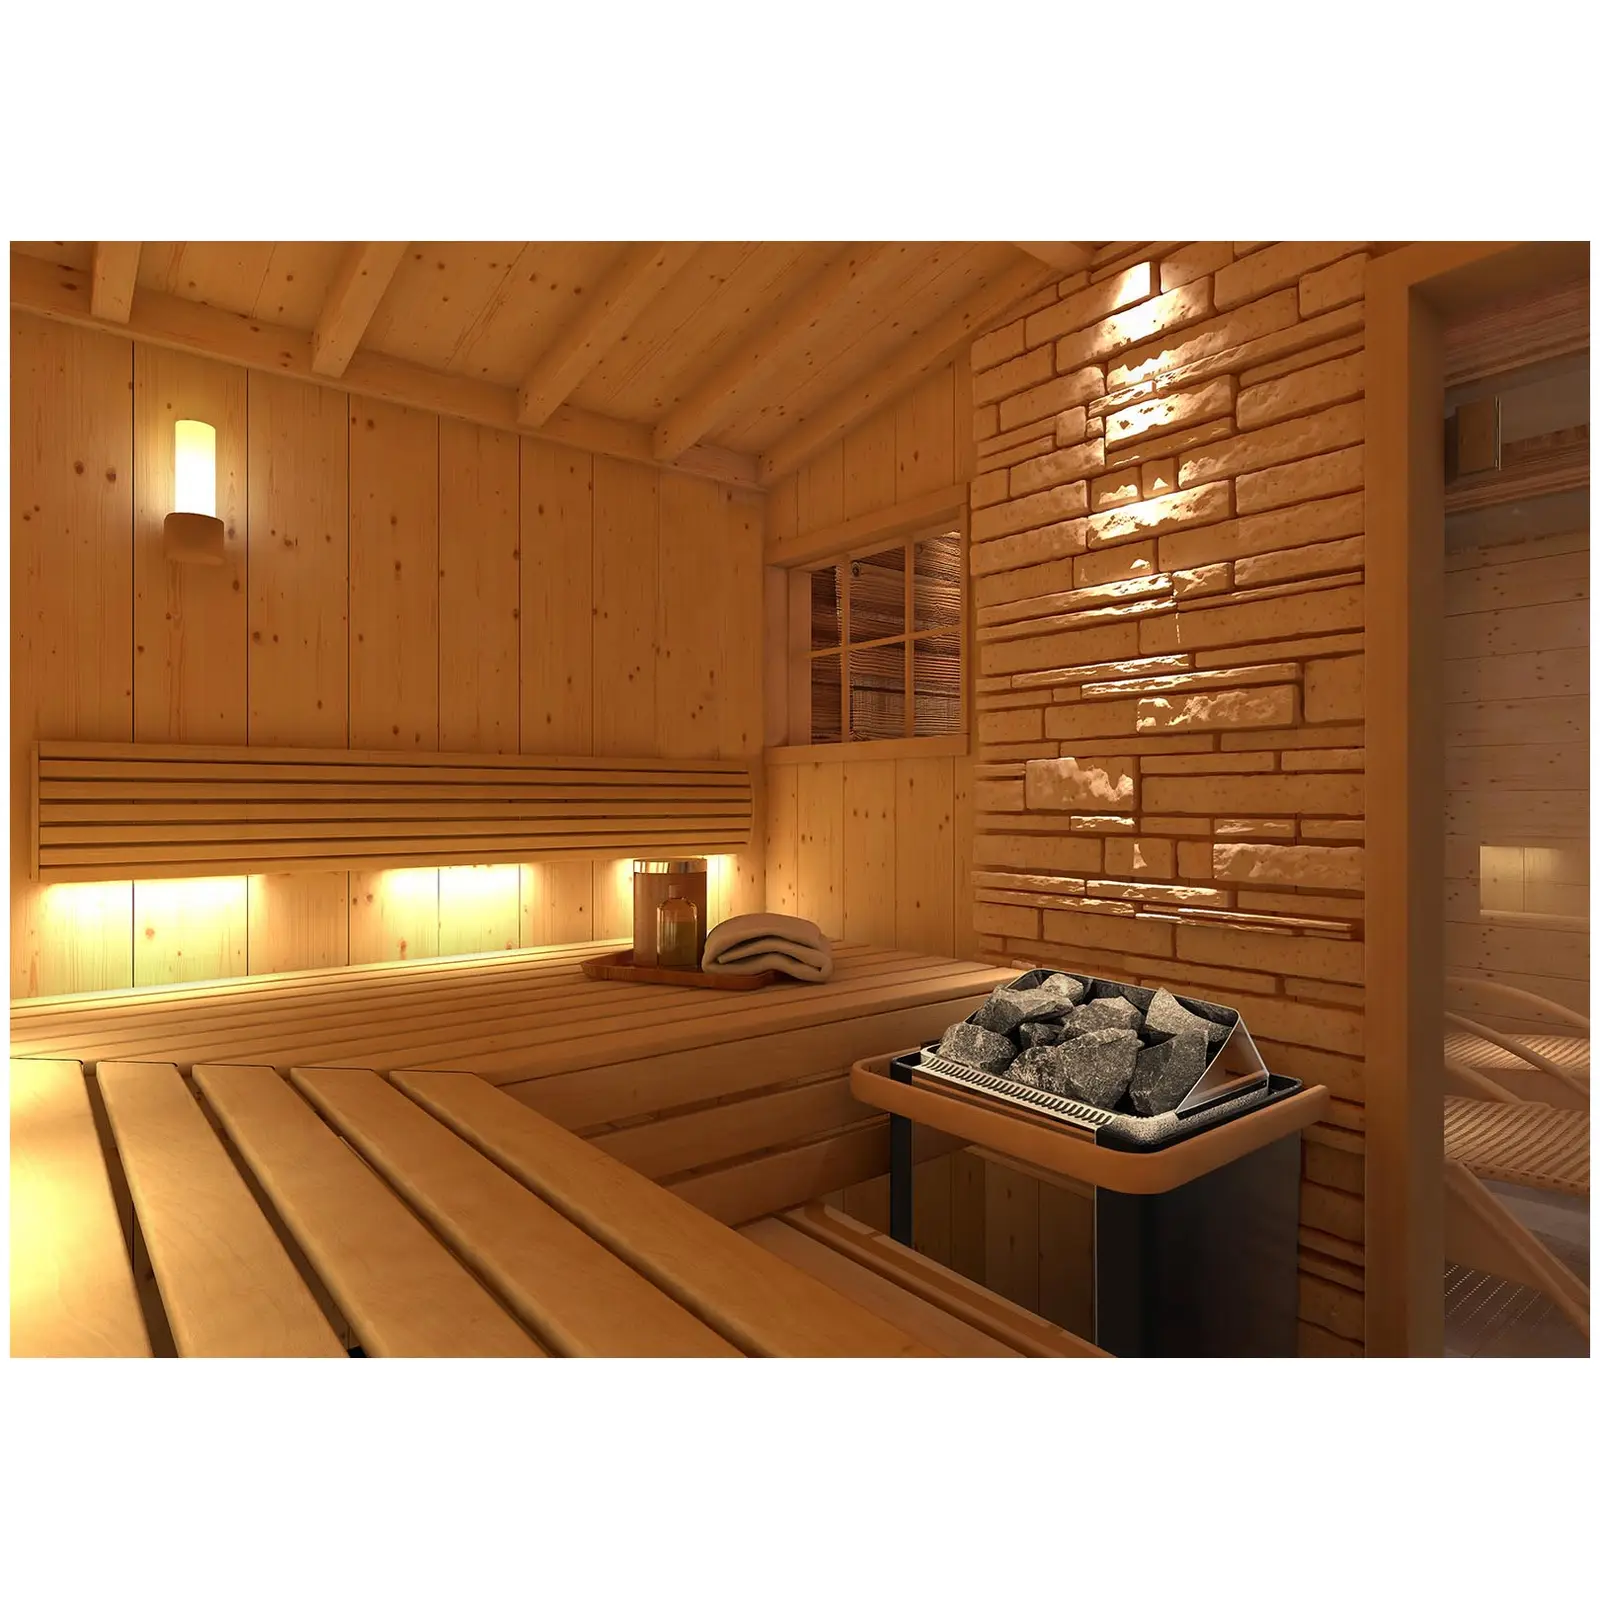 Piec do sauny - elektryczny - 4,5 kW